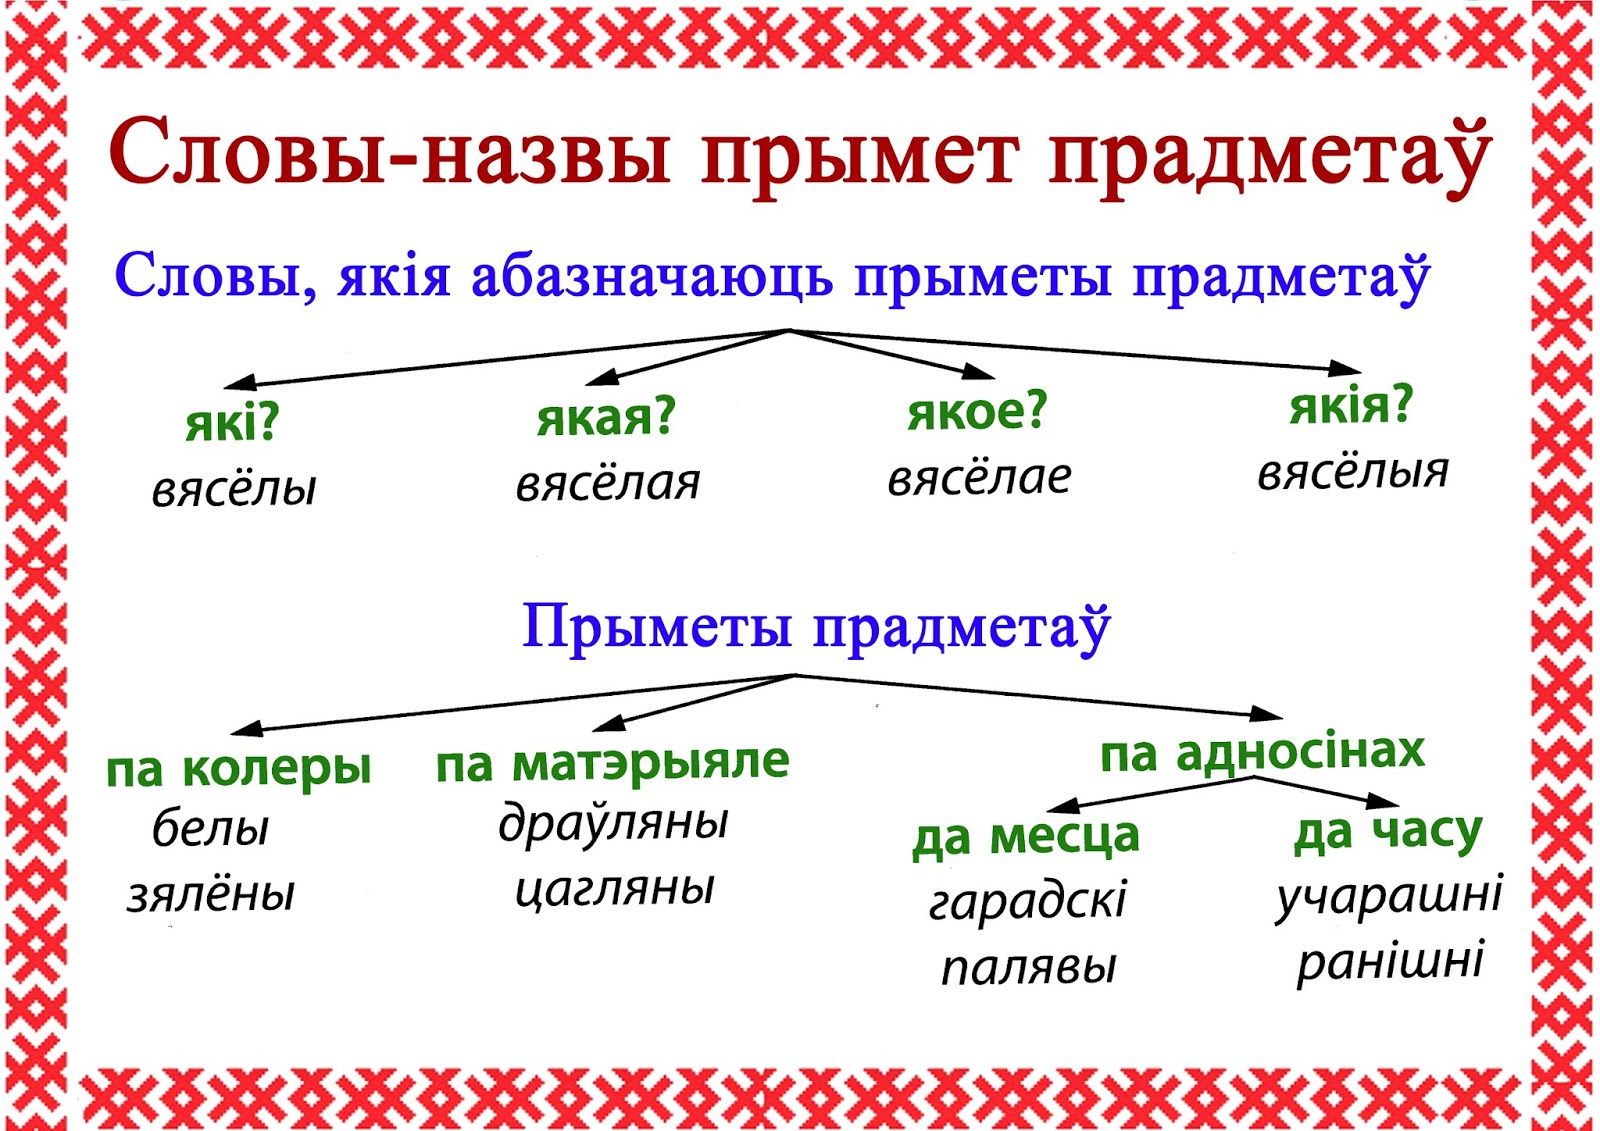 члены сказа в белорусском языке фото 99